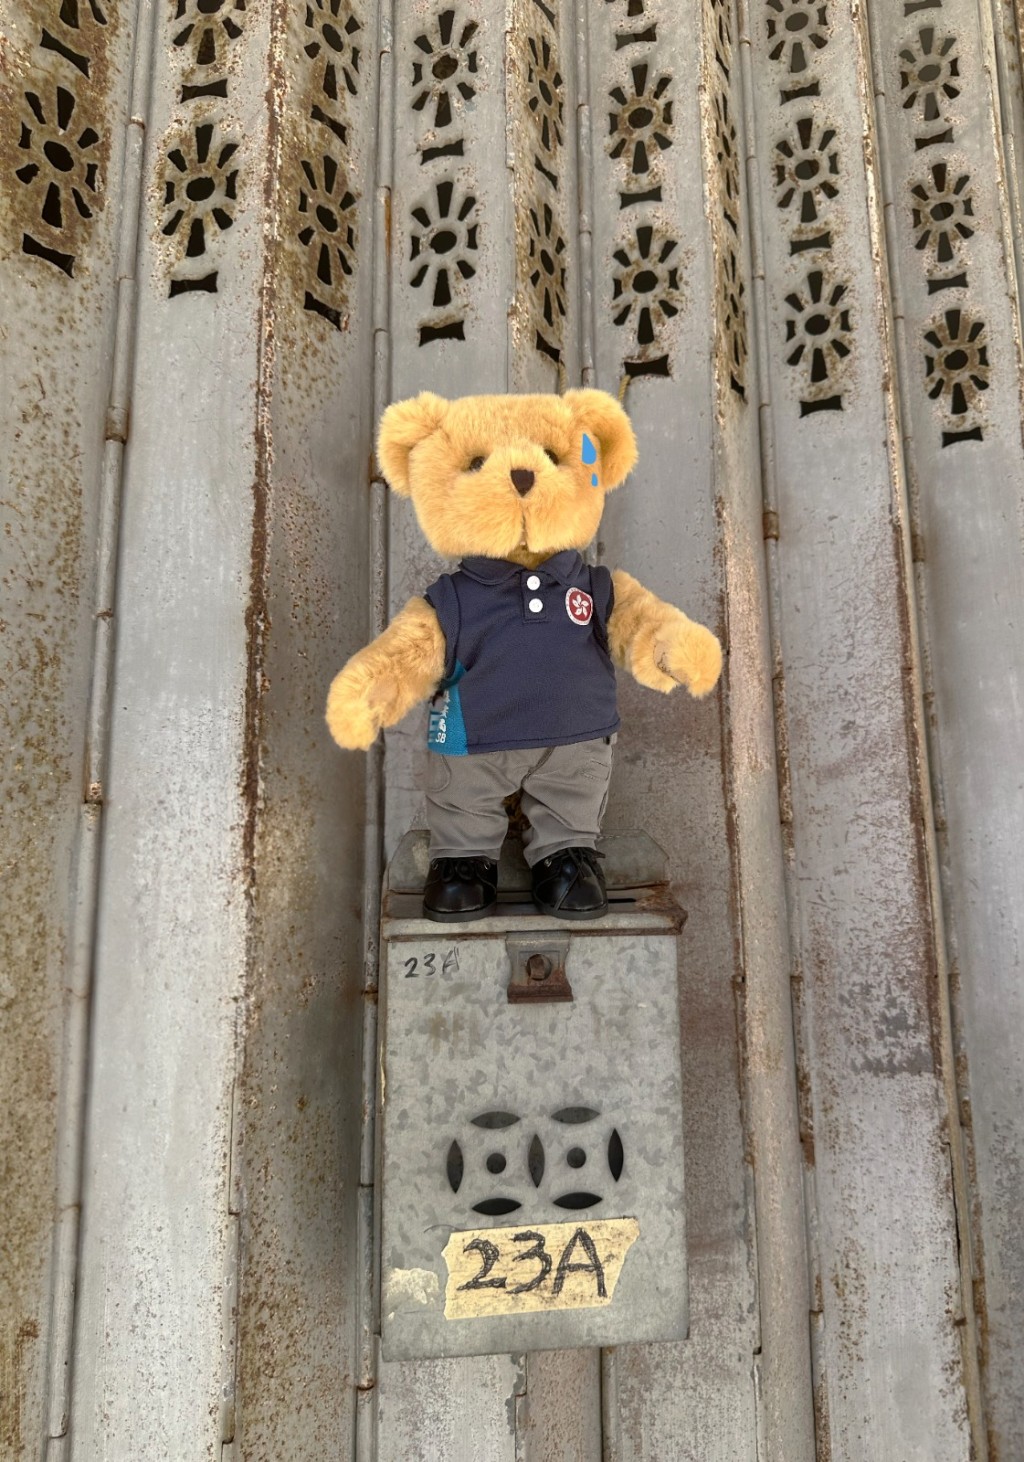 保安局的吉祥物百厌星SB熊「随团」出行到沙头角天后庙及新楼街等地「打卡」留念。保安局fb